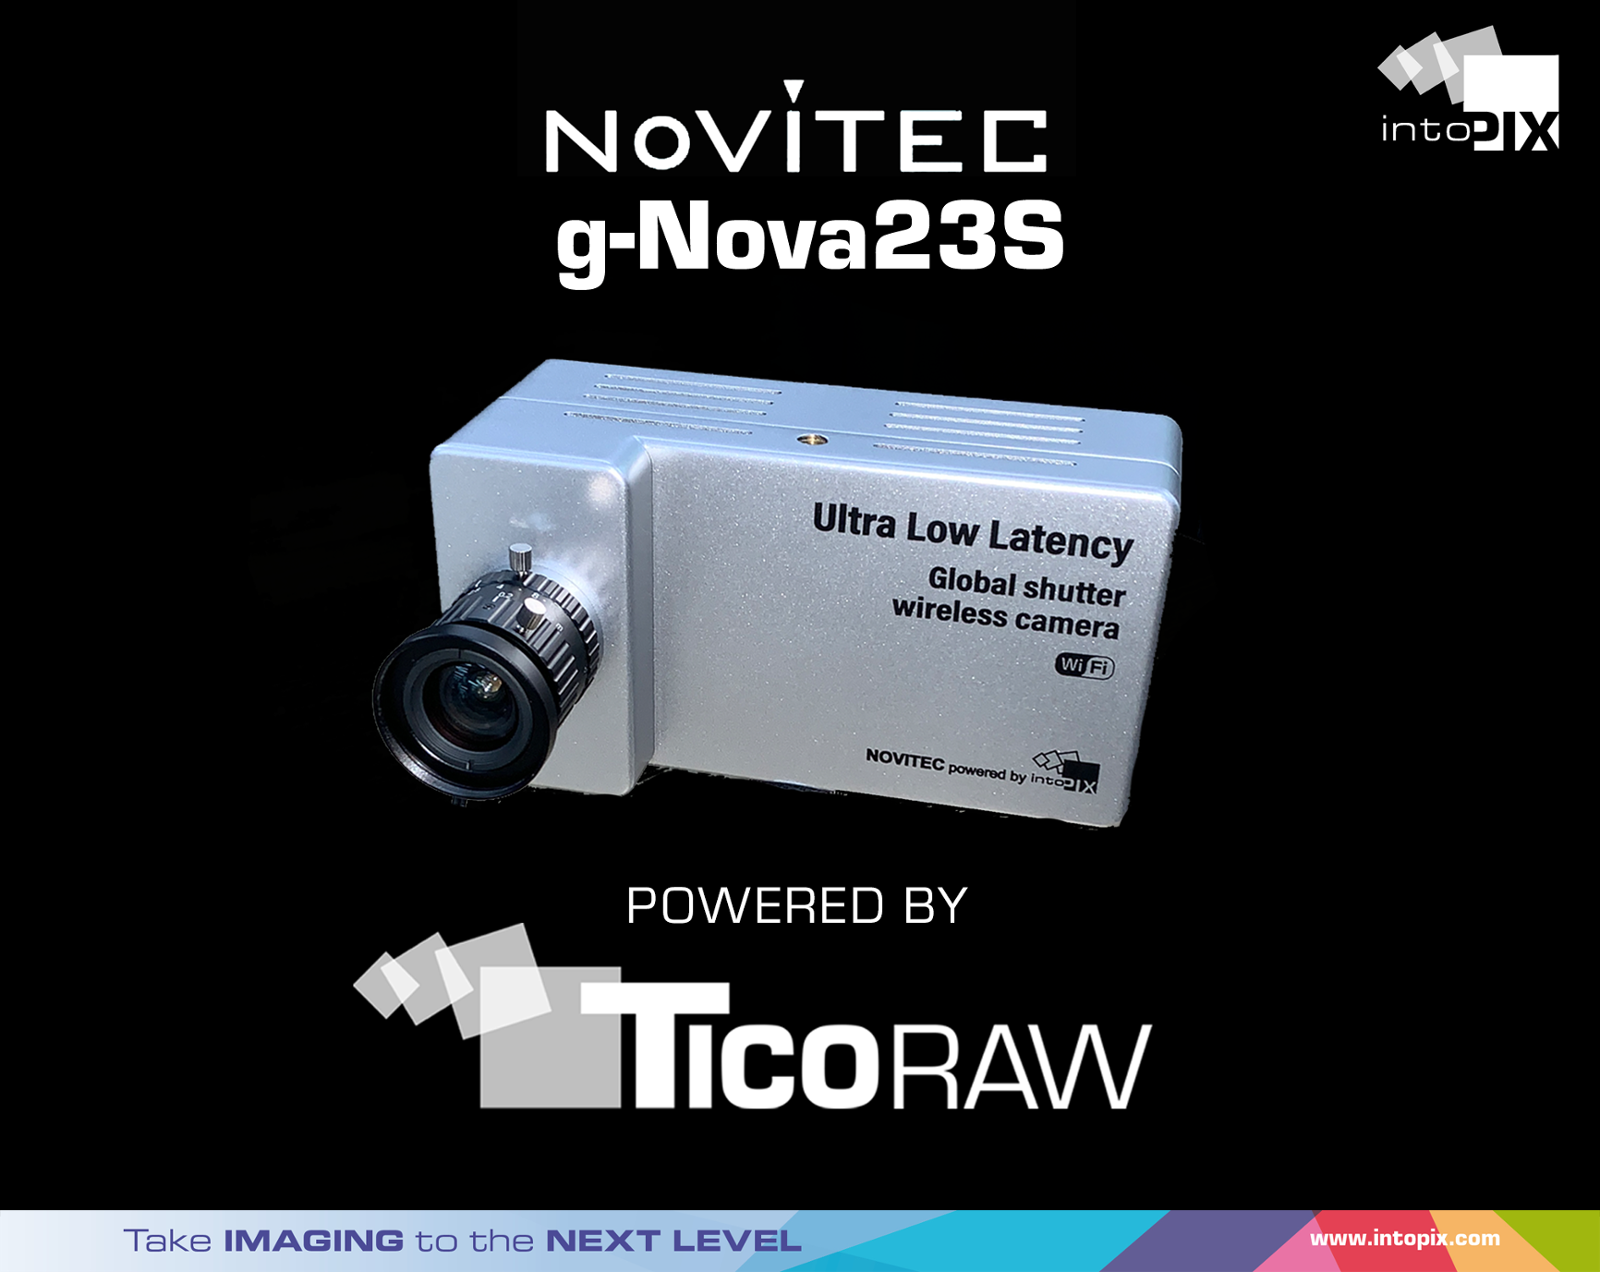 intoPIX 宣佈將TicoRAW集成到新的 Novitec 工業相機產品群組